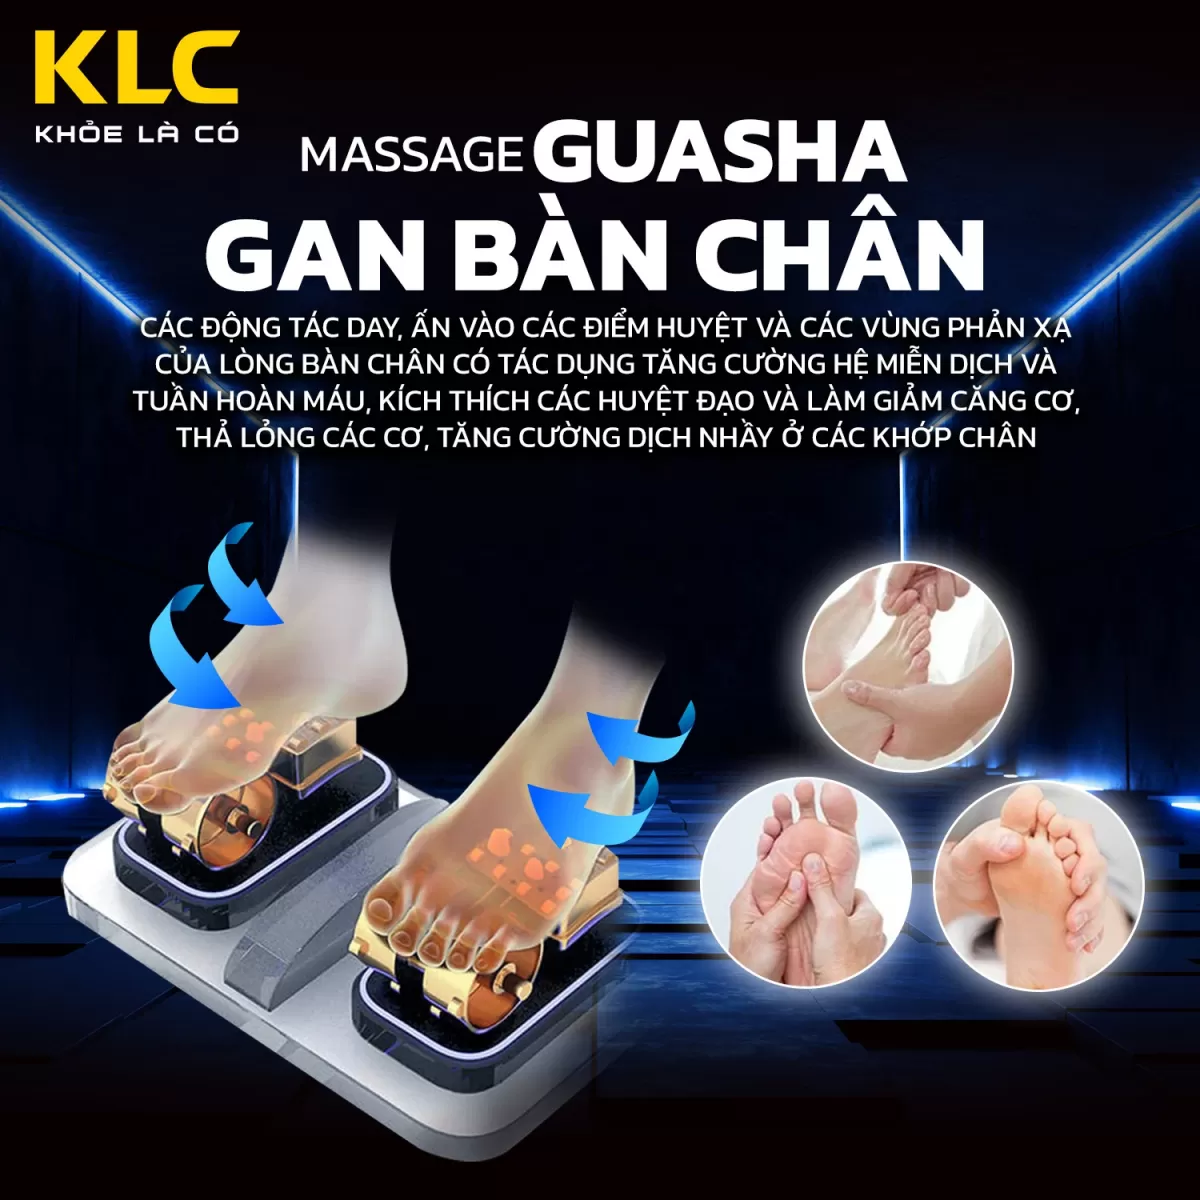 Massage gan bàn chân của Ghế Massage KLC K686